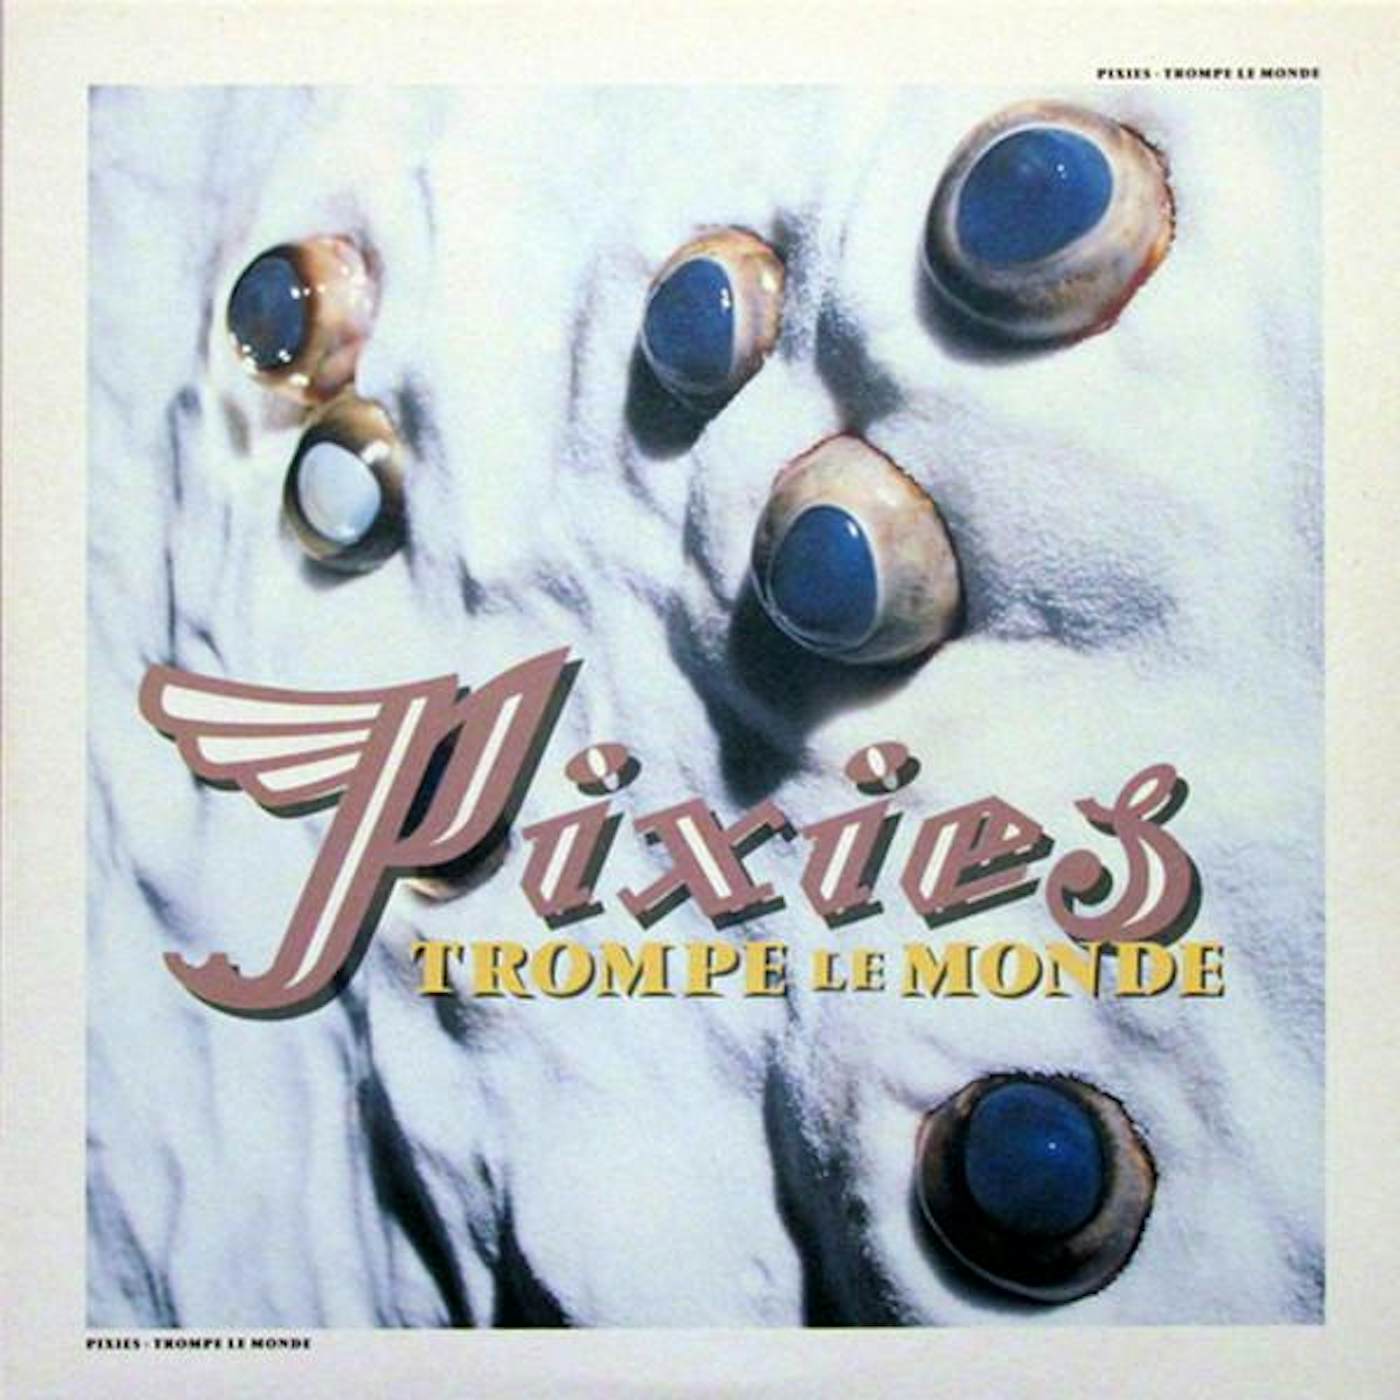 Pixies Trompe La Monde Vinyl Record